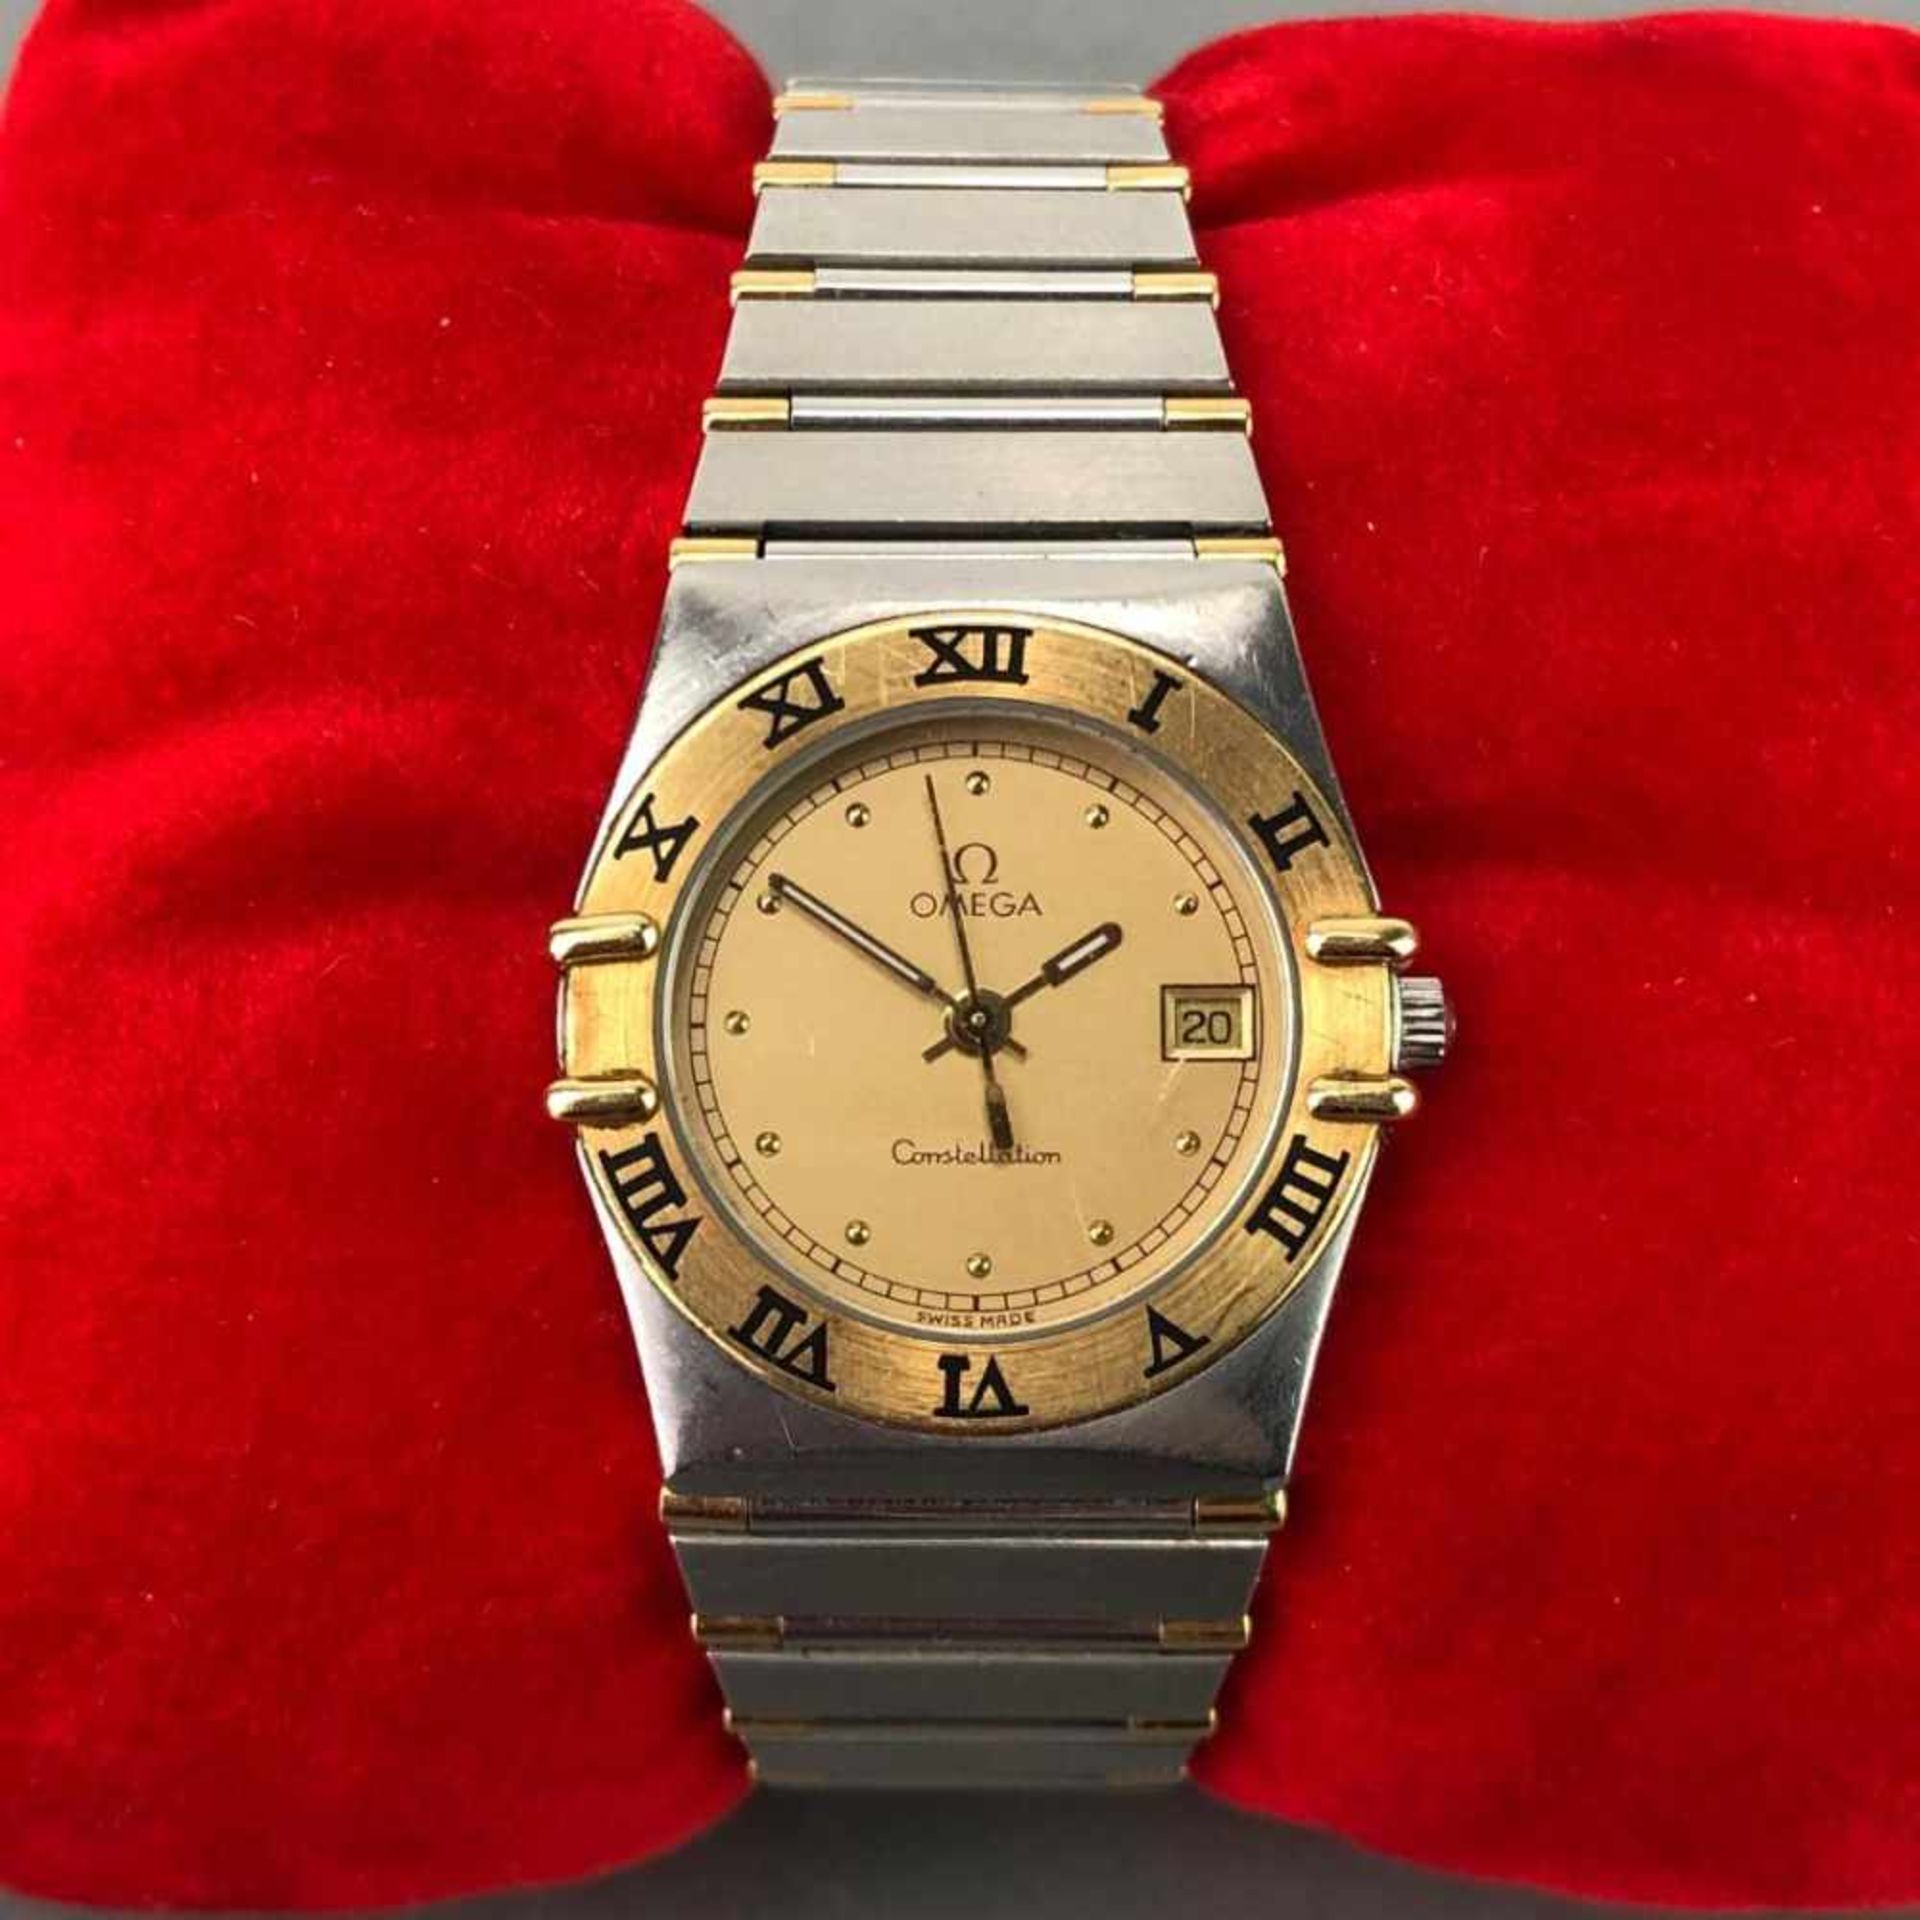 OMEGA Constellation Damen Armbanduhr in Gold 18 K / 750 und Stahl. In originaler Schachtel, mit